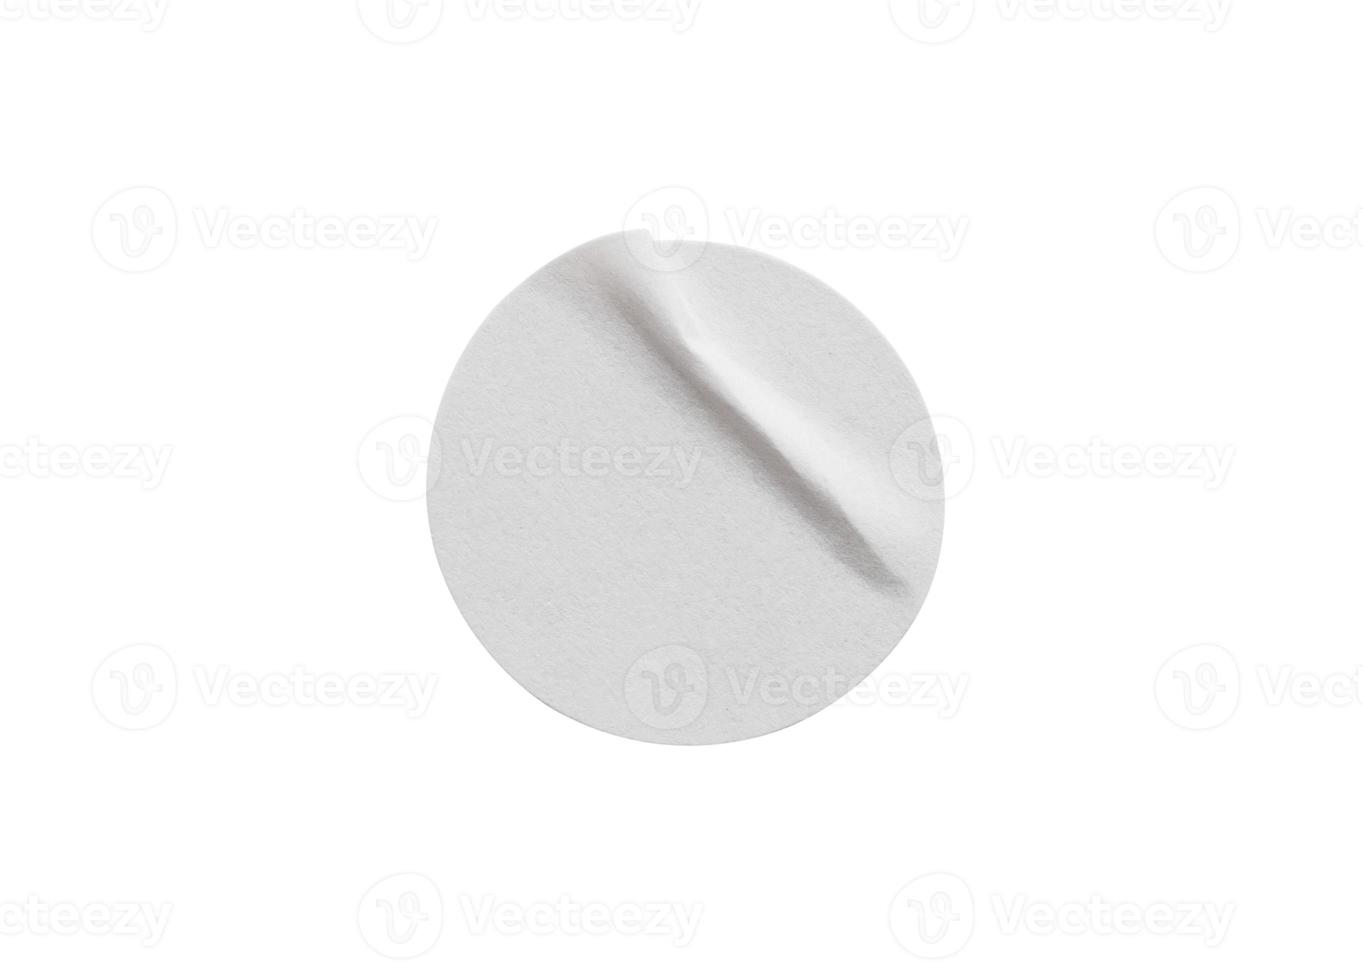 etiqueta adhesiva de papel redonda blanca en blanco aislada en fondo blanco con trazado de recorte foto